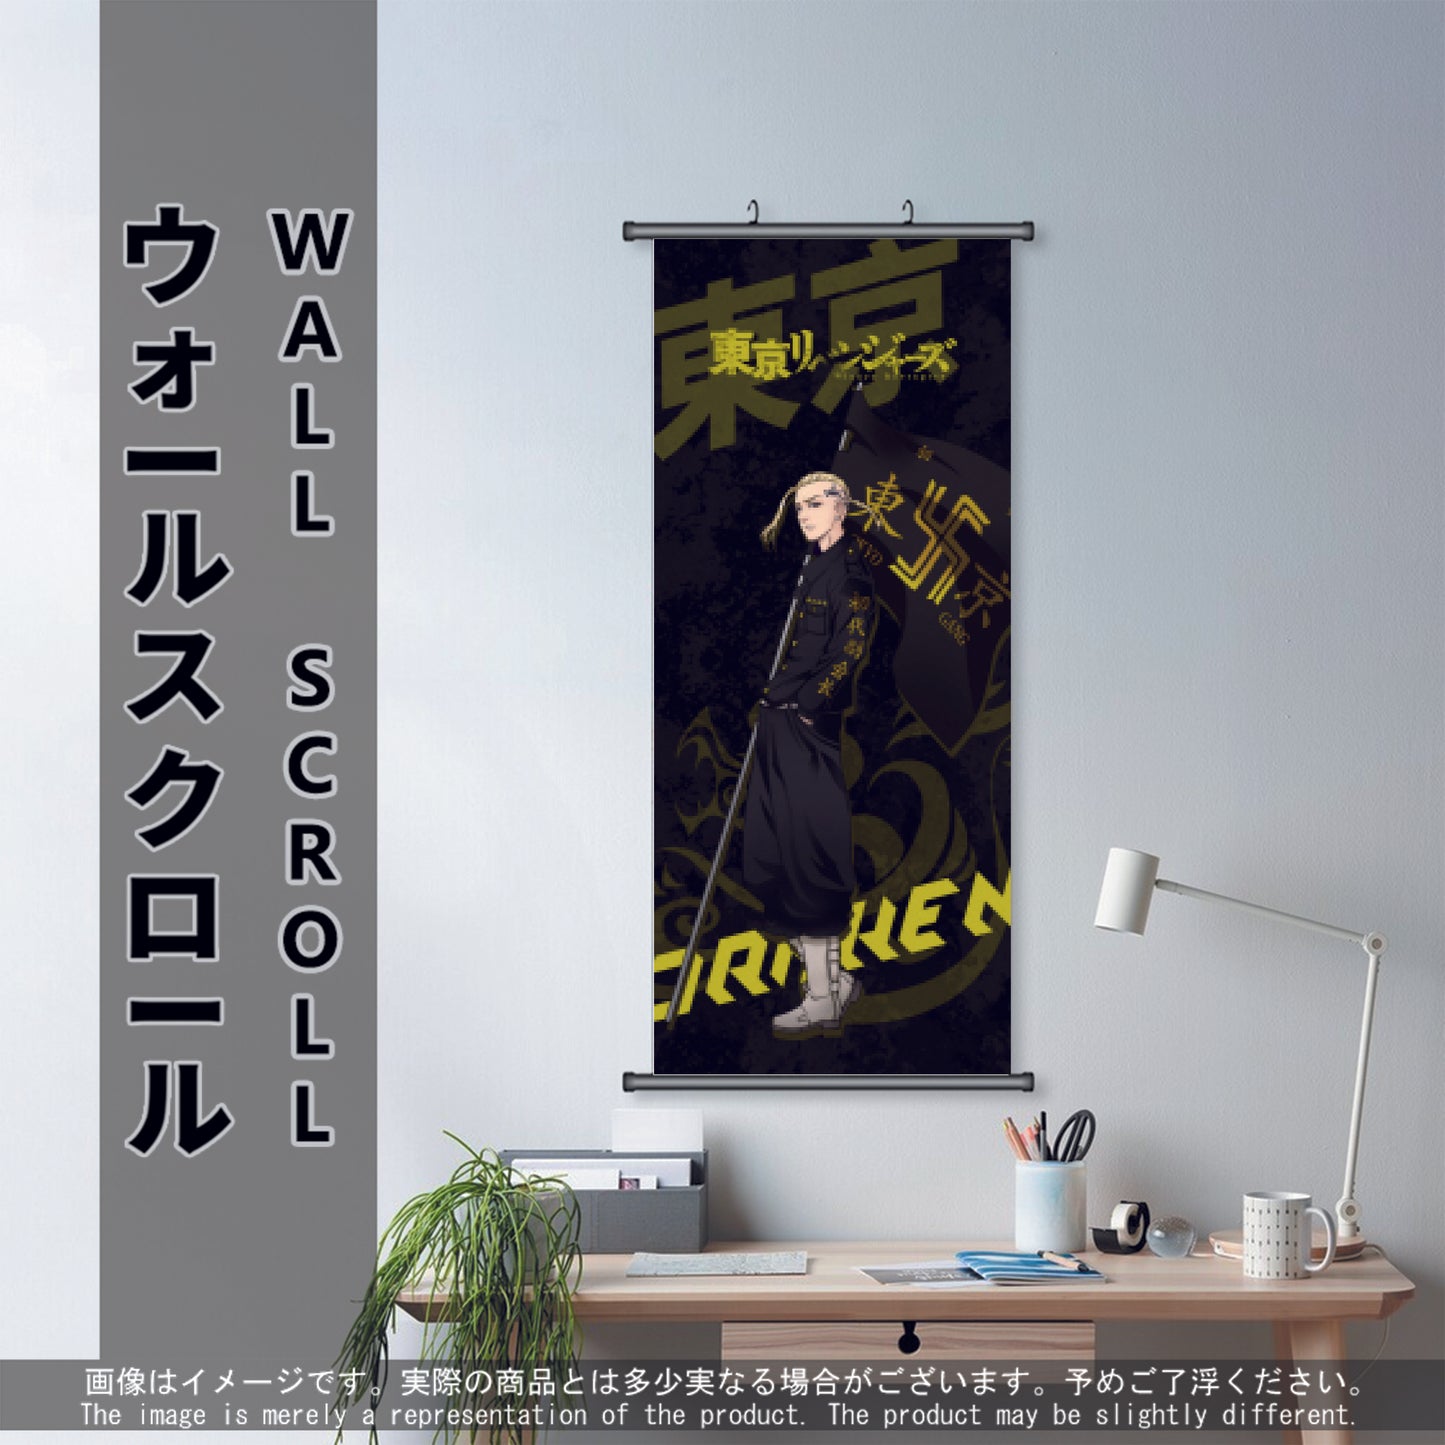 (Anime-TKR-01) DRAKEN Tokyo Revengers Anime Wall Scroll